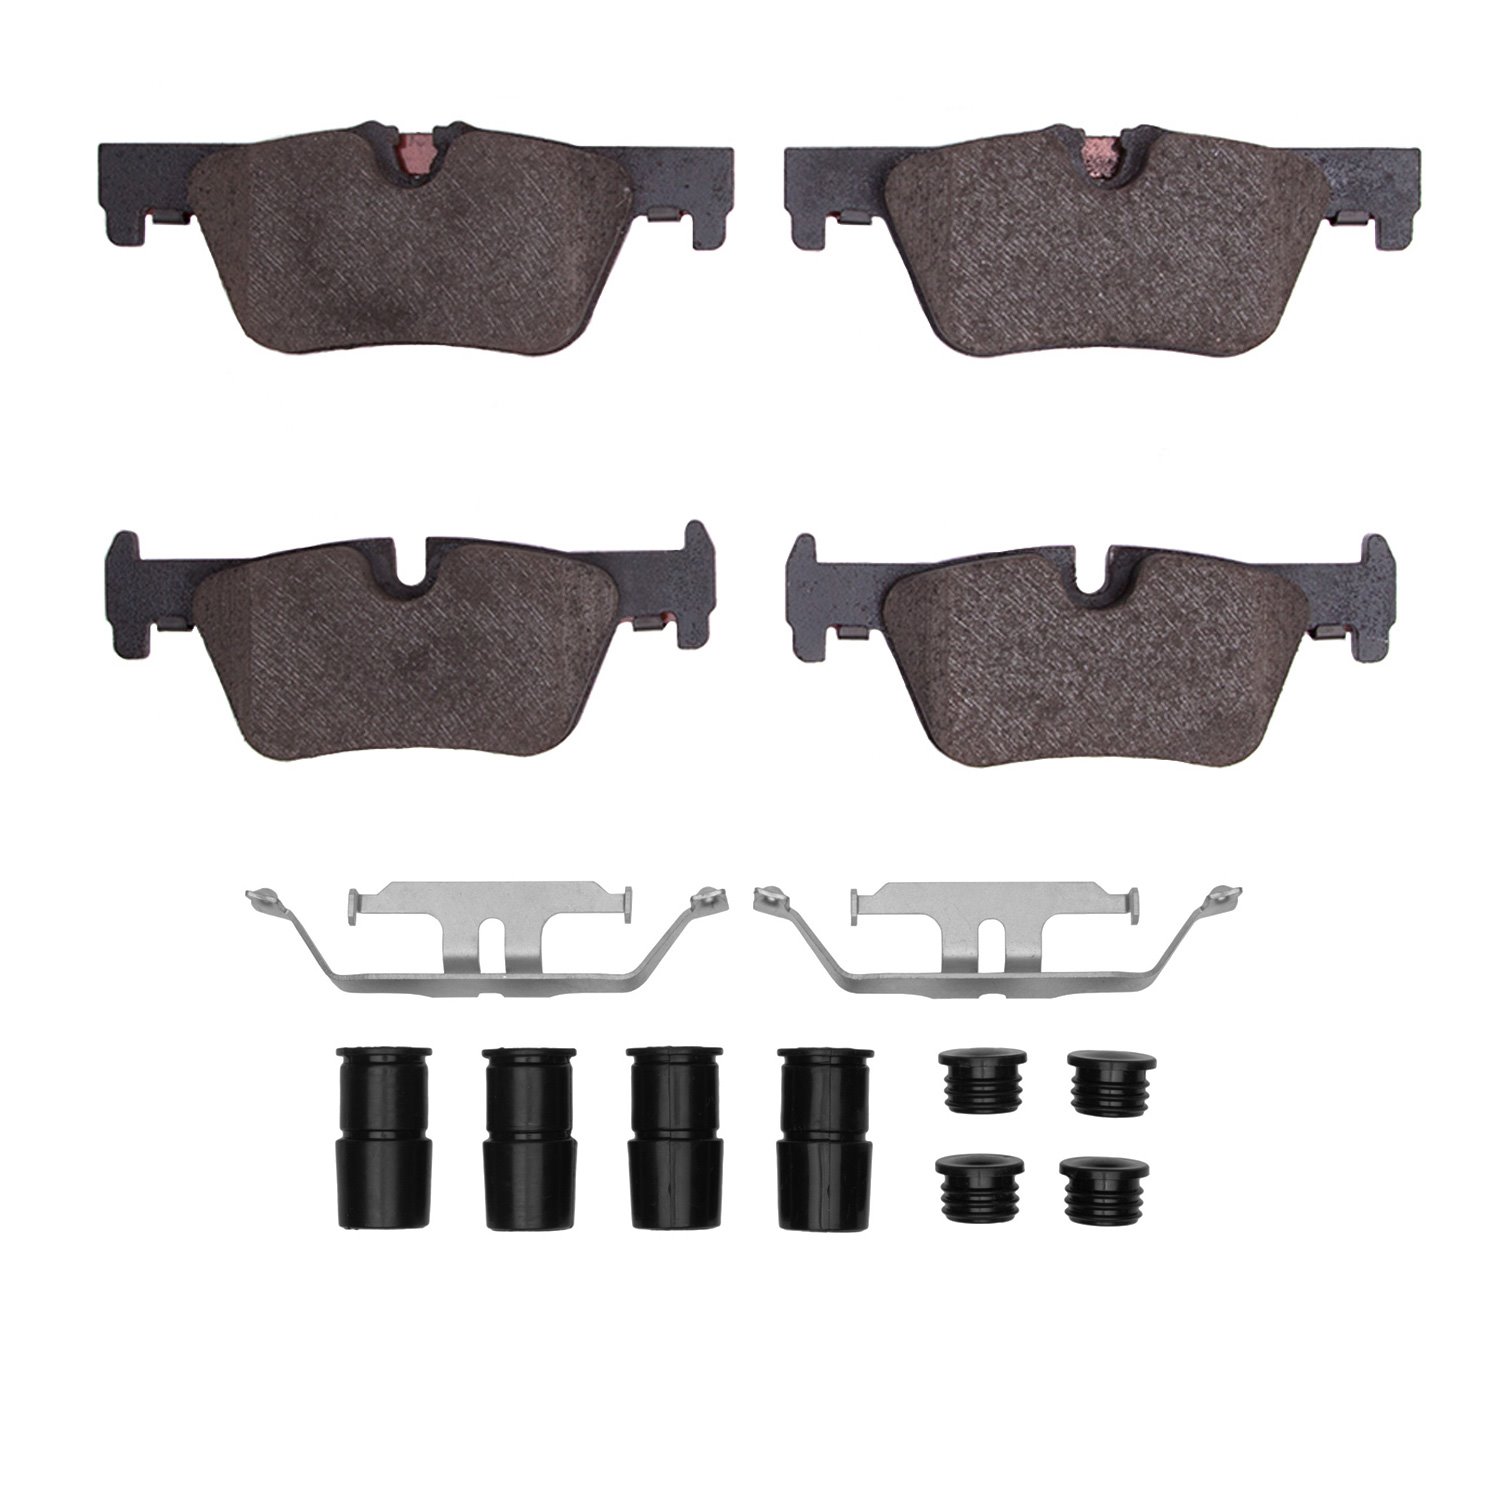 1310-1613-01 3000-Series Ceramic Brake Pads & Hardware Kit, 2012-2021 BMW, Position: Rear